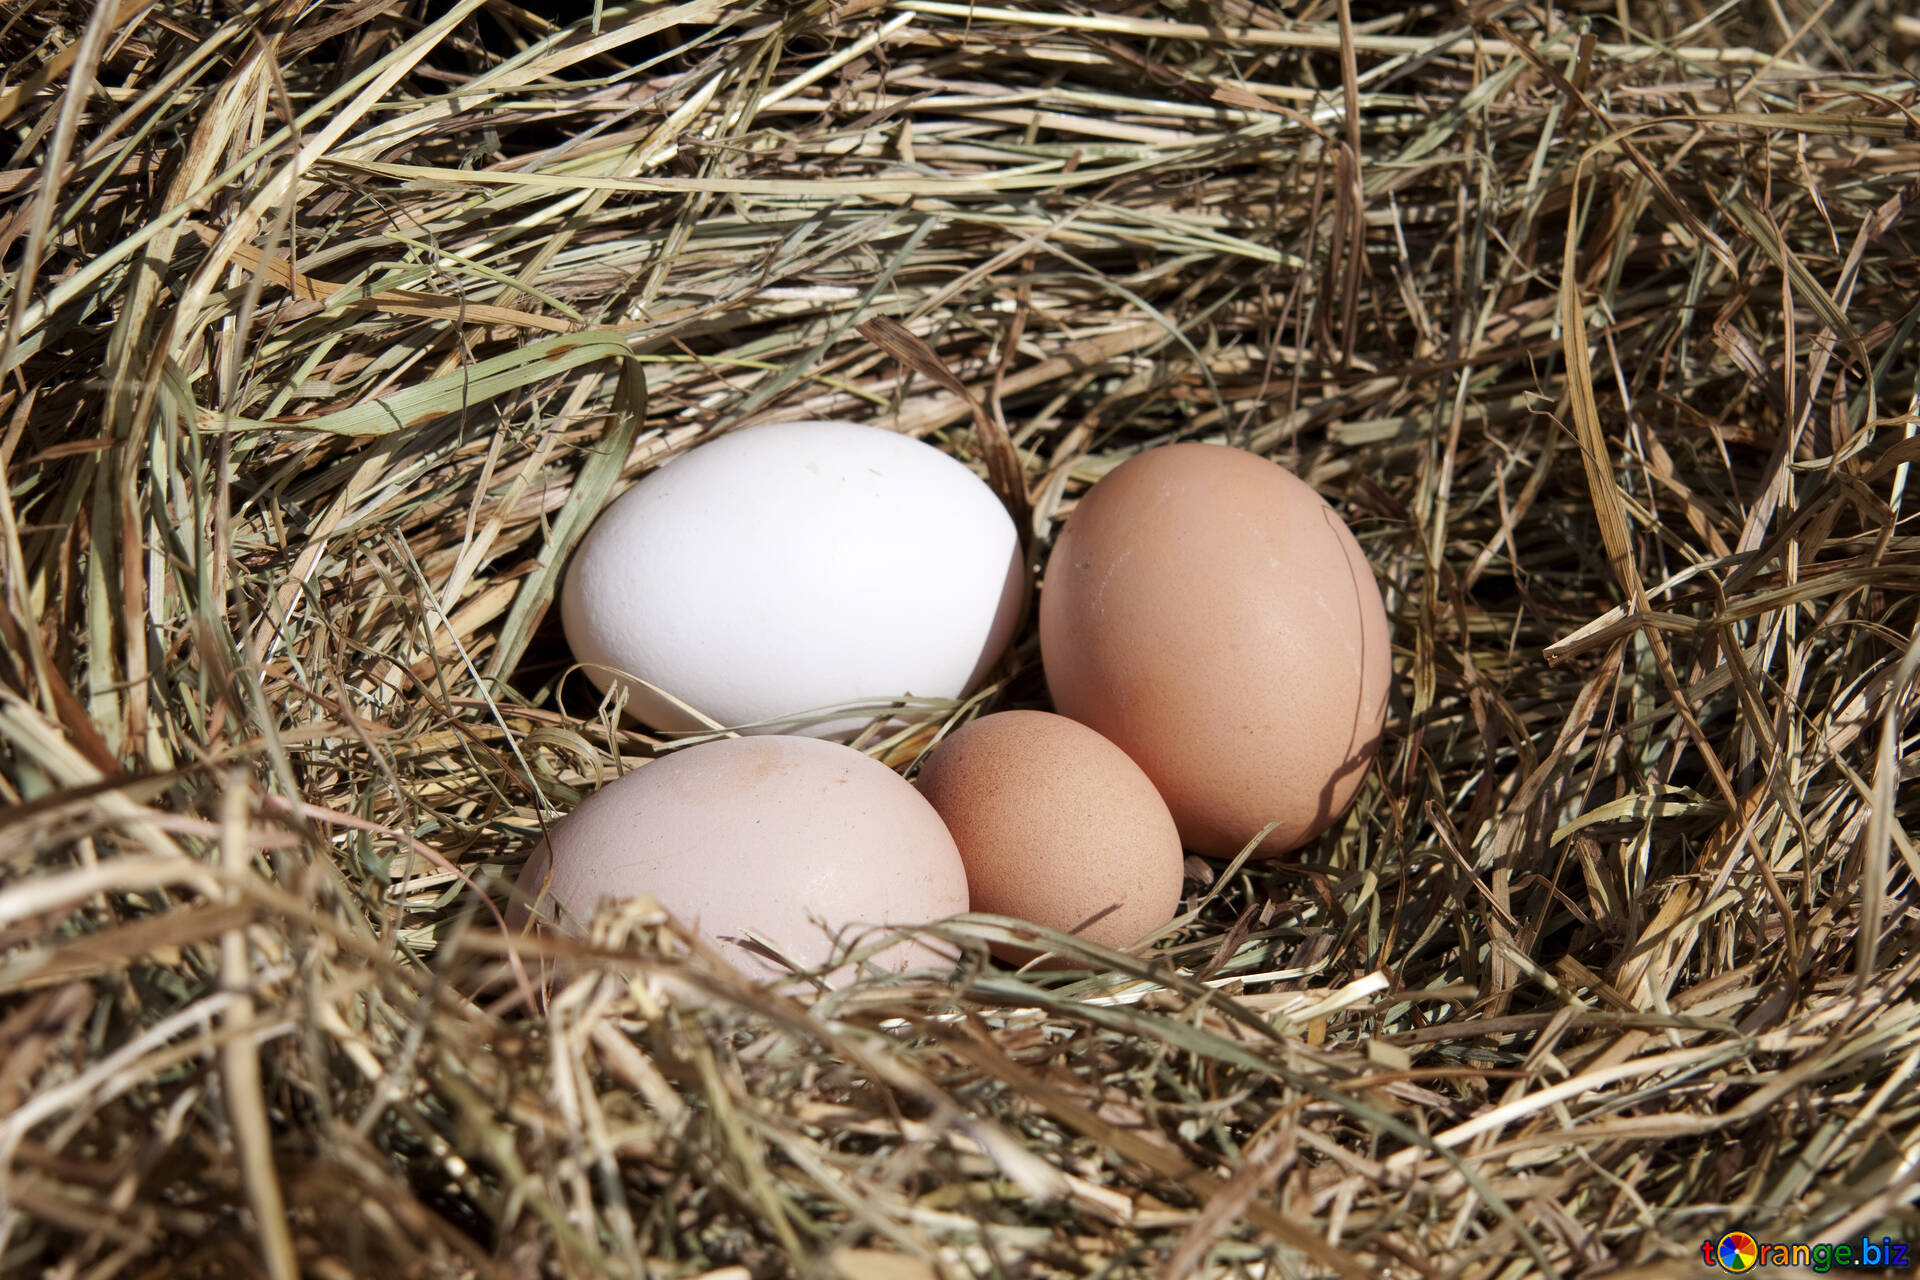 Кура несет мелкие яйца. Куриные яйца в гнезде. Куриные гнезда. Гнездо с яйцами. Домашние яйца.